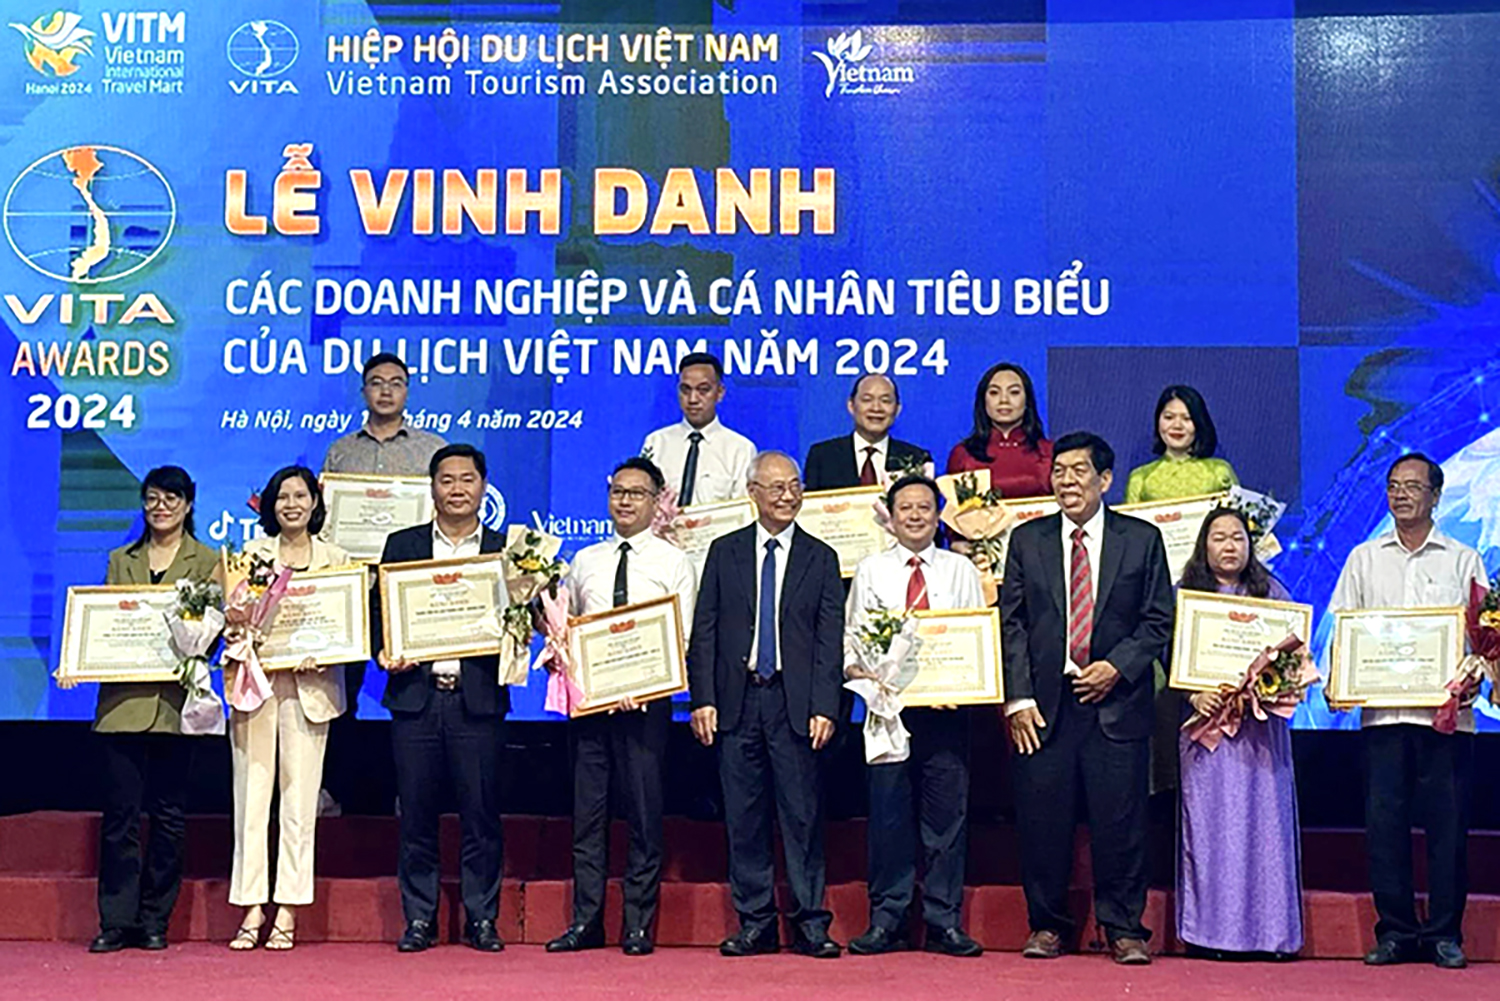 Trung tâm Du lịch Phong Nha-Kẻ Bàng được Hiệp hội Du lịch Việt Nam vinh danh